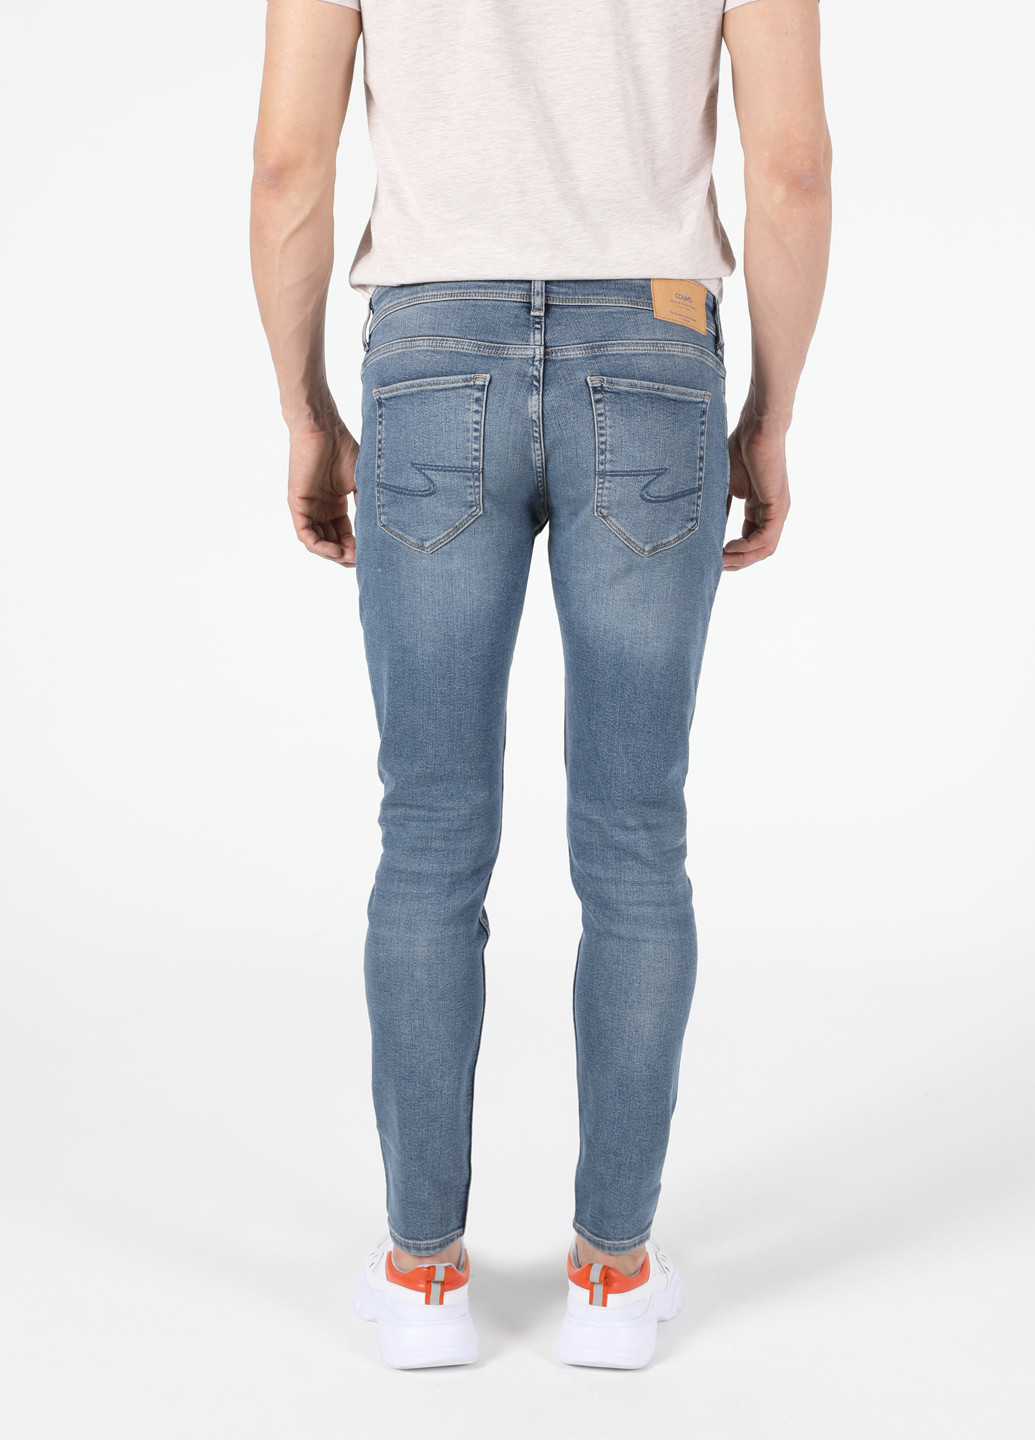 Серо-синие демисезонные скинни джинсы 041 DANNY Colin's